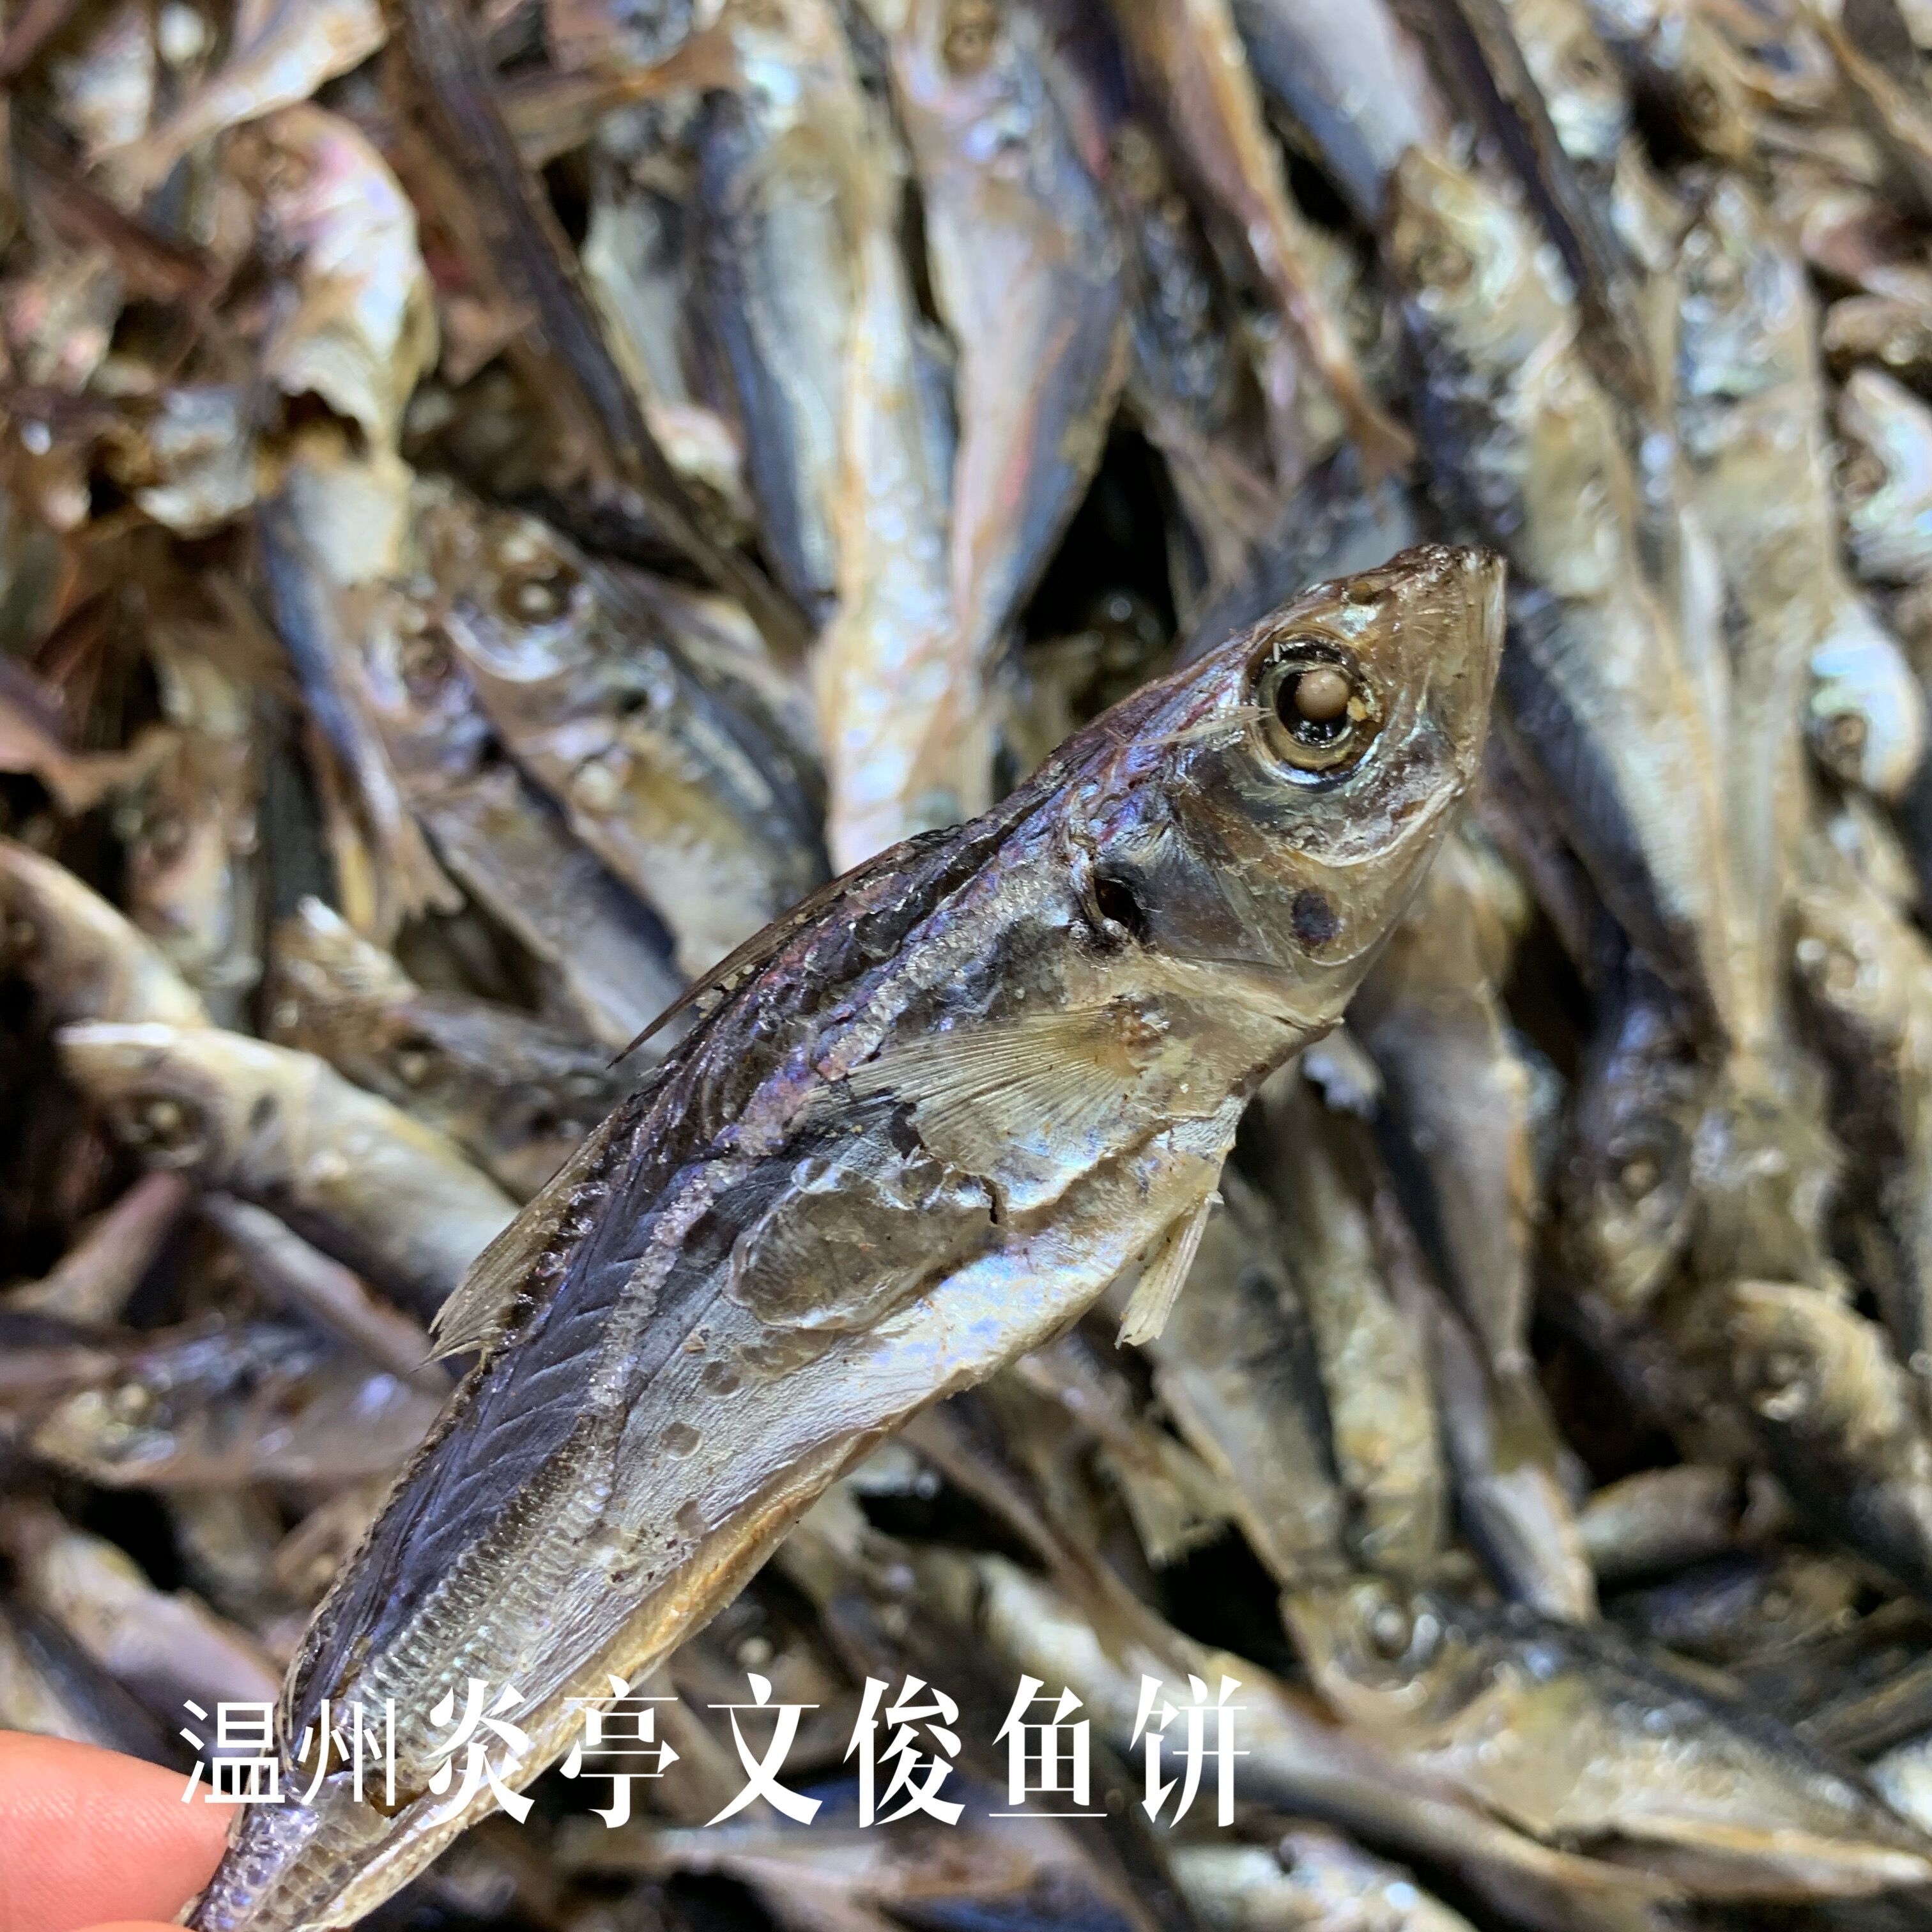 温州特产 海鲜干货 巴浪鱼 熟鱼干小鱼干炖豆腐 即食鱼干500g